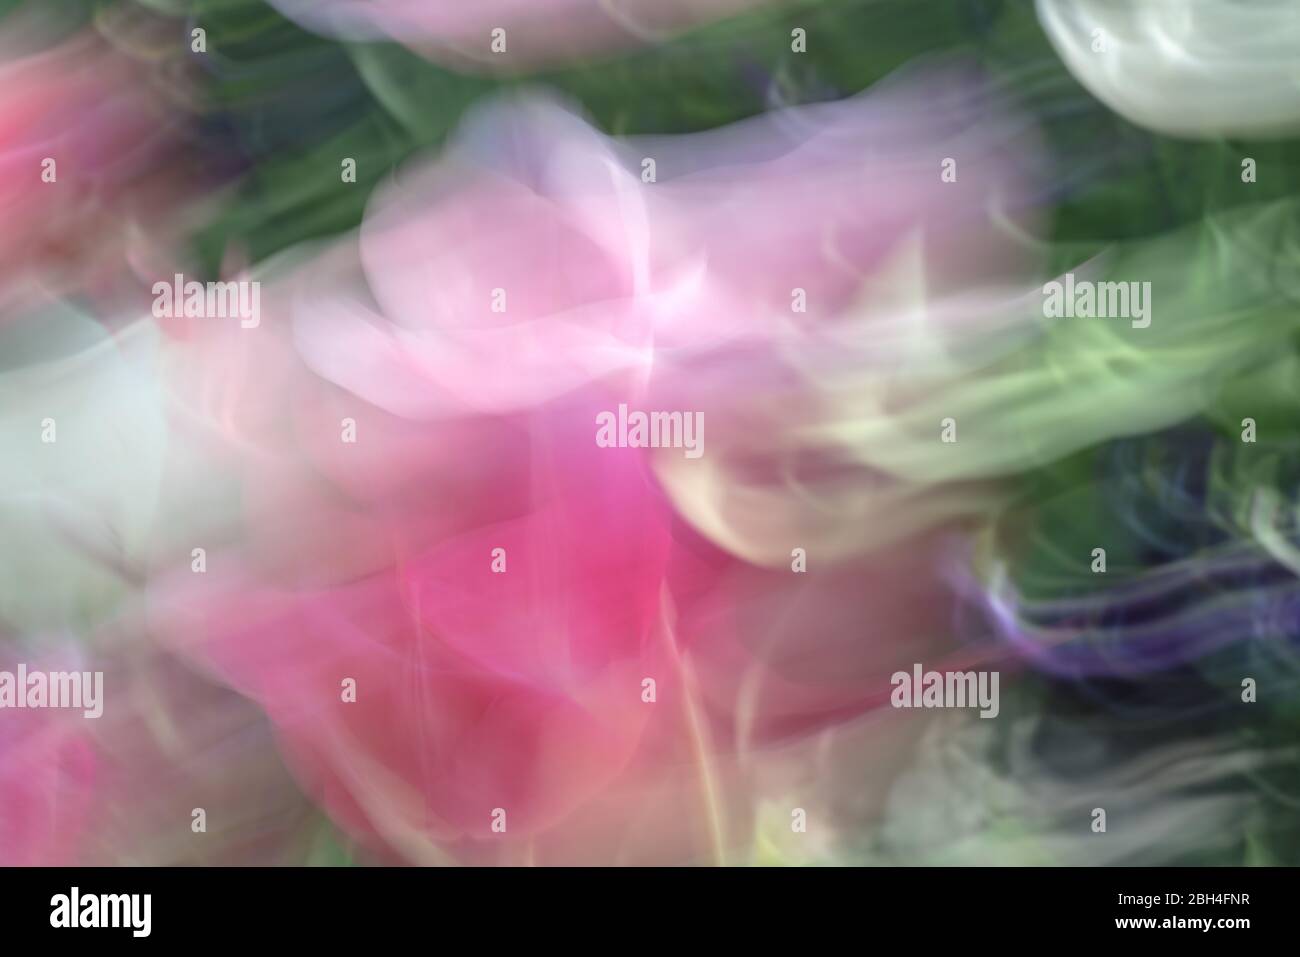 Image abstraite dans les couleurs du printemps créée avec un mouvement délibéré de caméra dans un jardin de tulipes dans un après-midi ensoleillé Banque D'Images